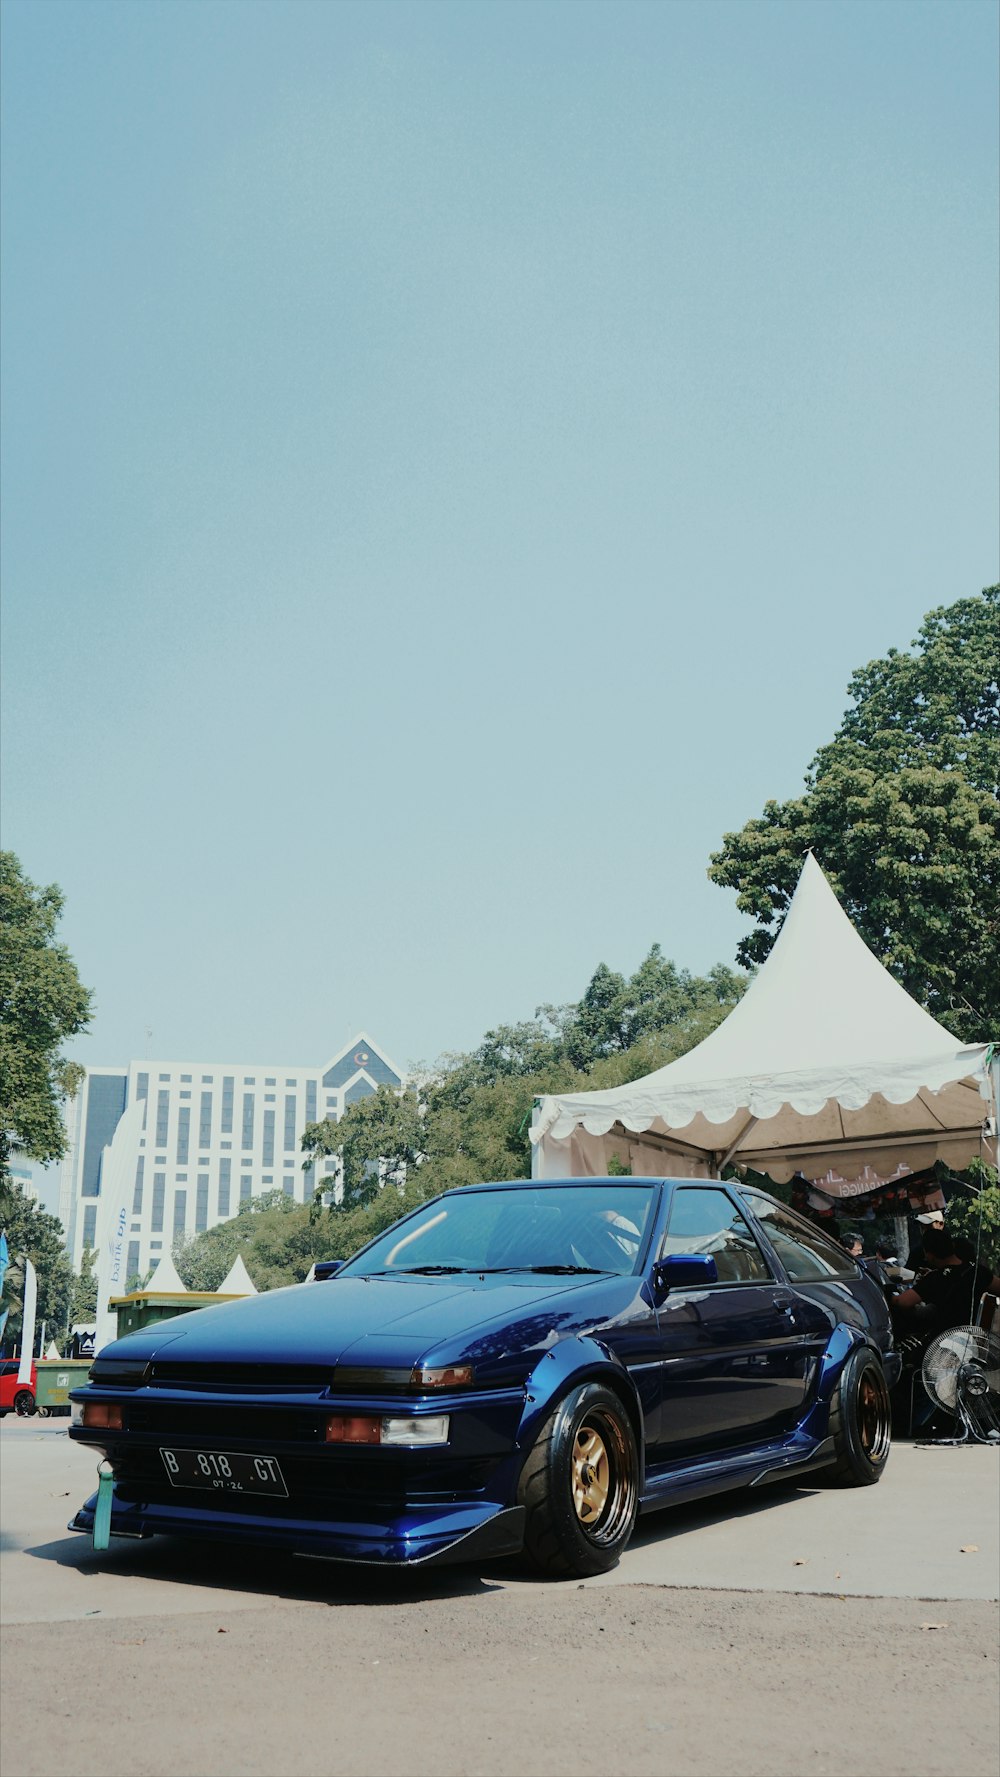 낮 동안 흰색과 갈색 건물 근처에 주차된 파란색 컨버터블 자동차